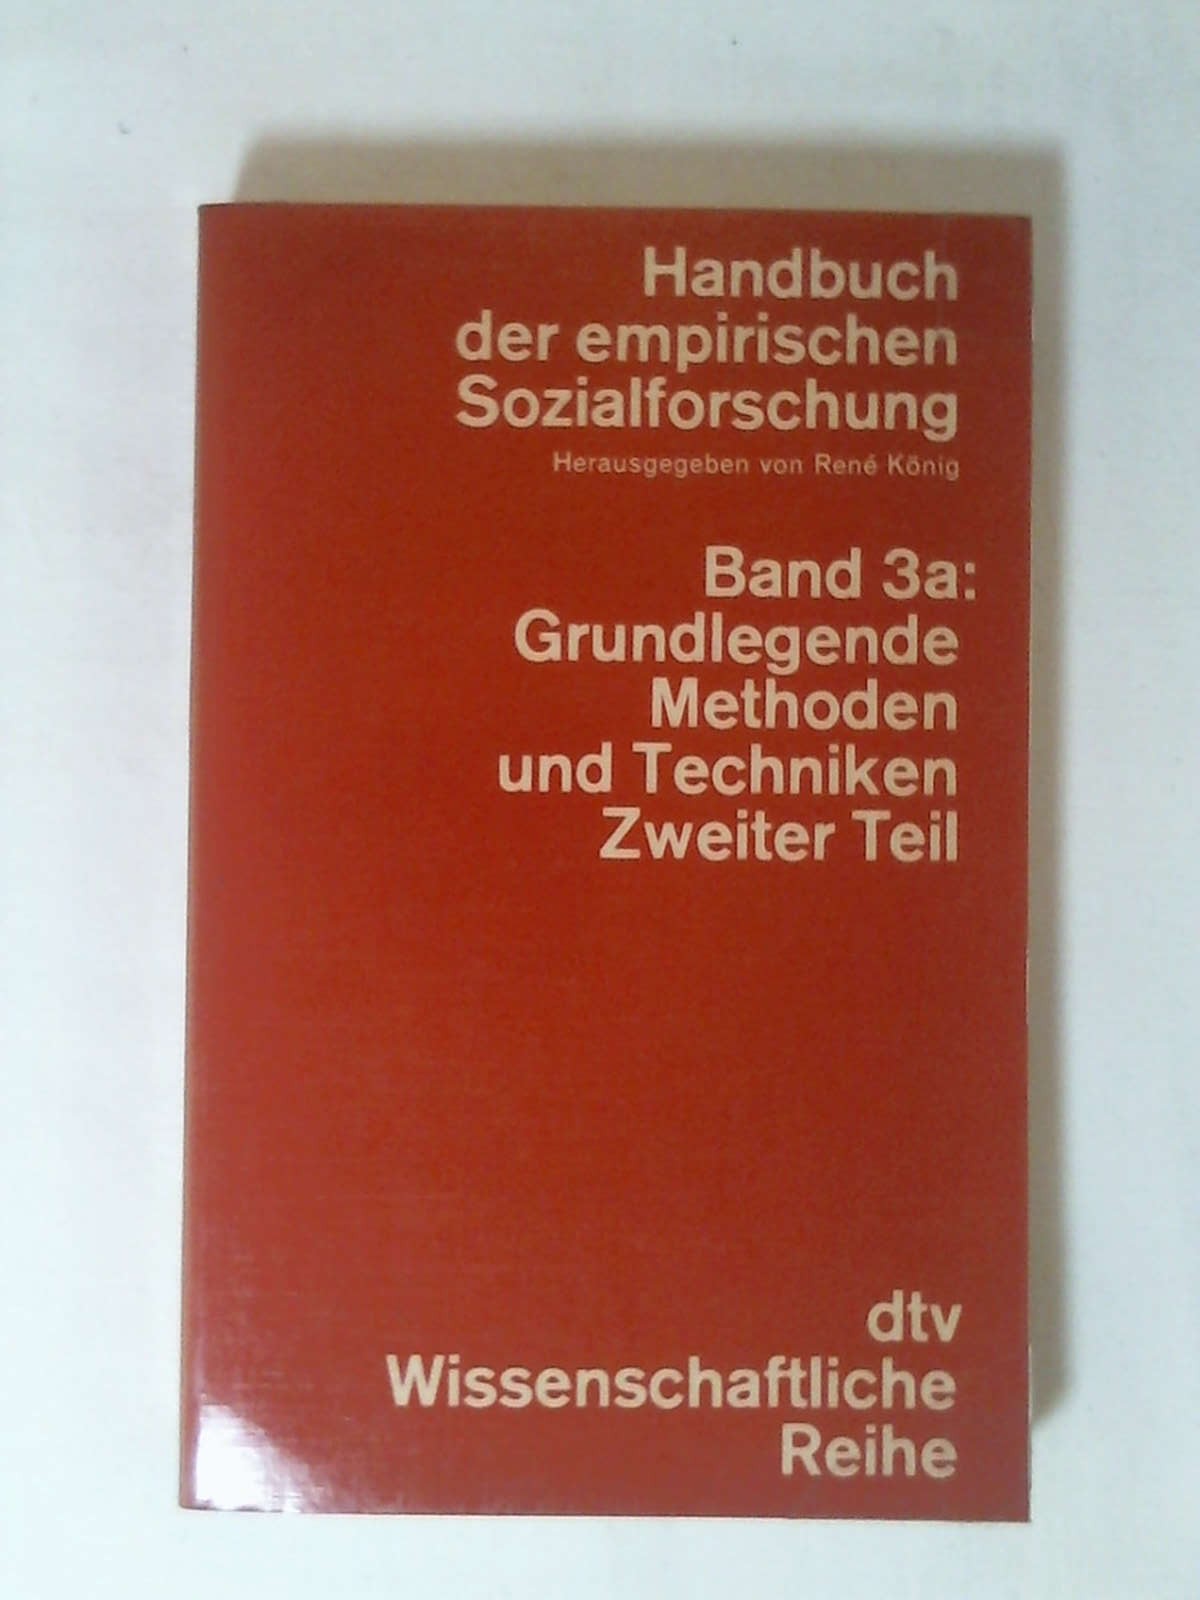 Handbuch der empirischen Sozialforschung. Band 3a: Grundlegende, Methoden und Techniken der empirischen Sozialforschung, Teil 2. - Erwin K. Scheuch